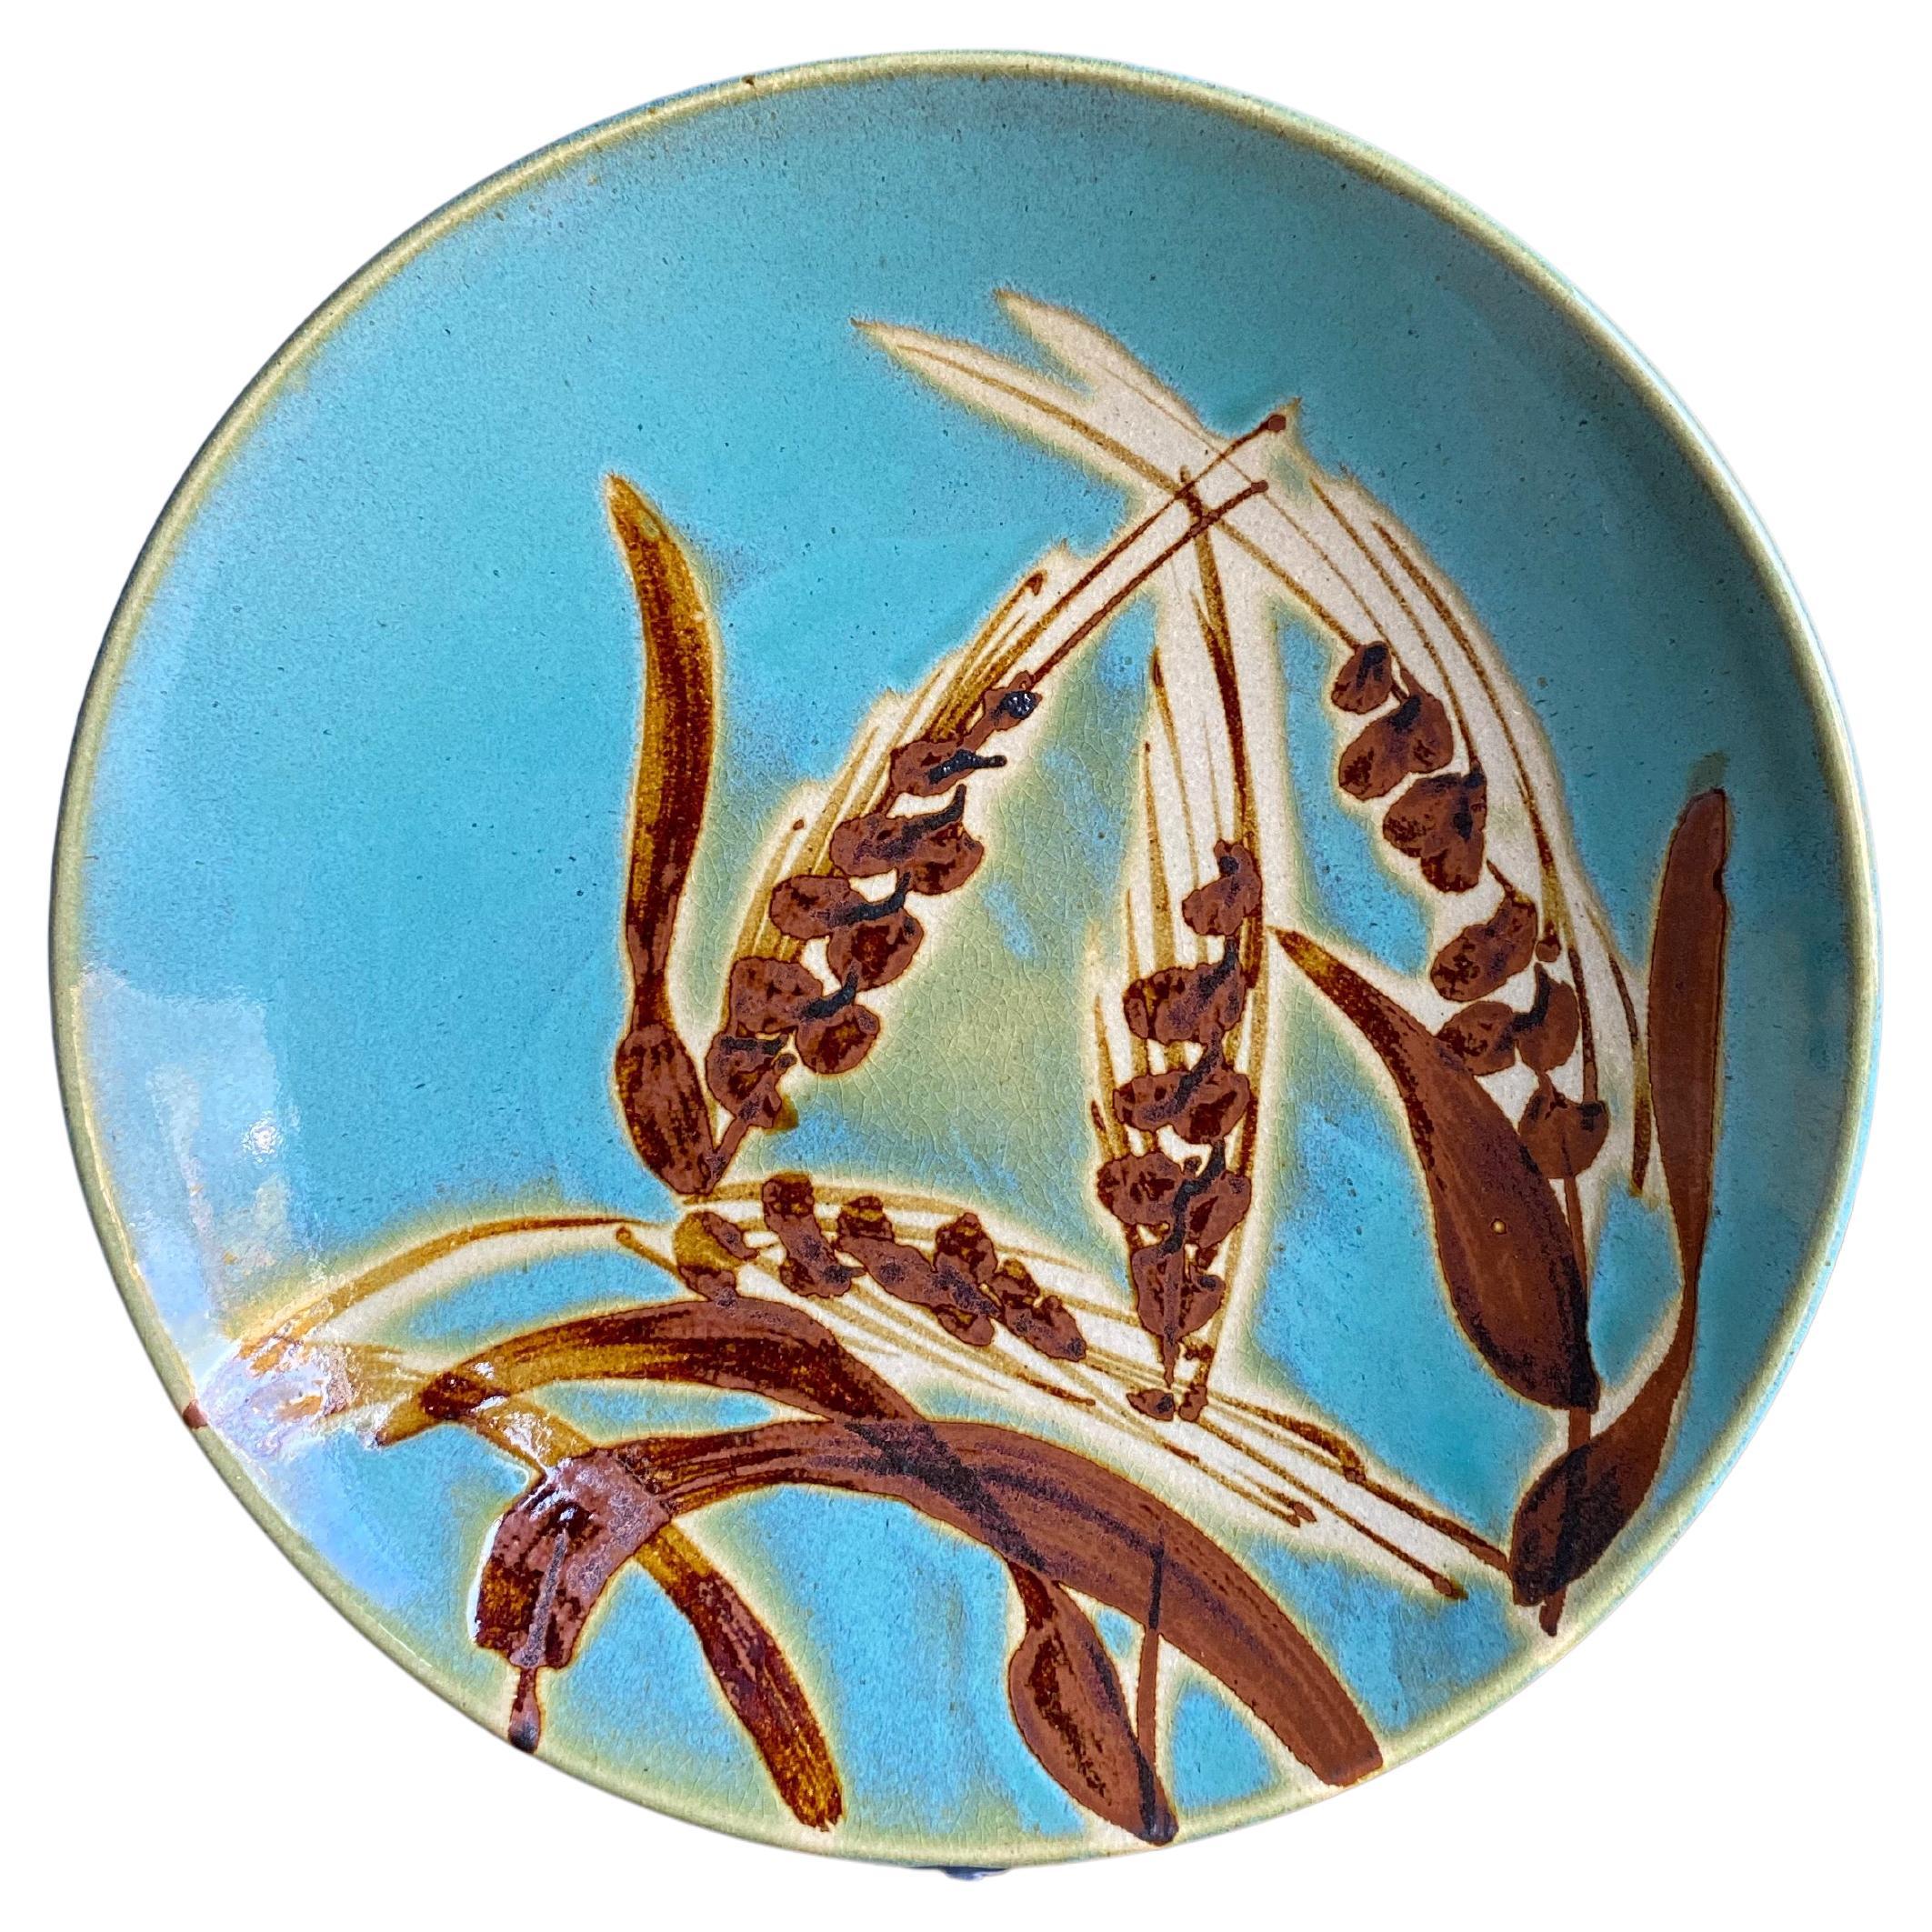 1948-2016 Mashiko-ware Chili pattern Small plate by Otsuka Kenichi MsJapanStudioPottery: kina141